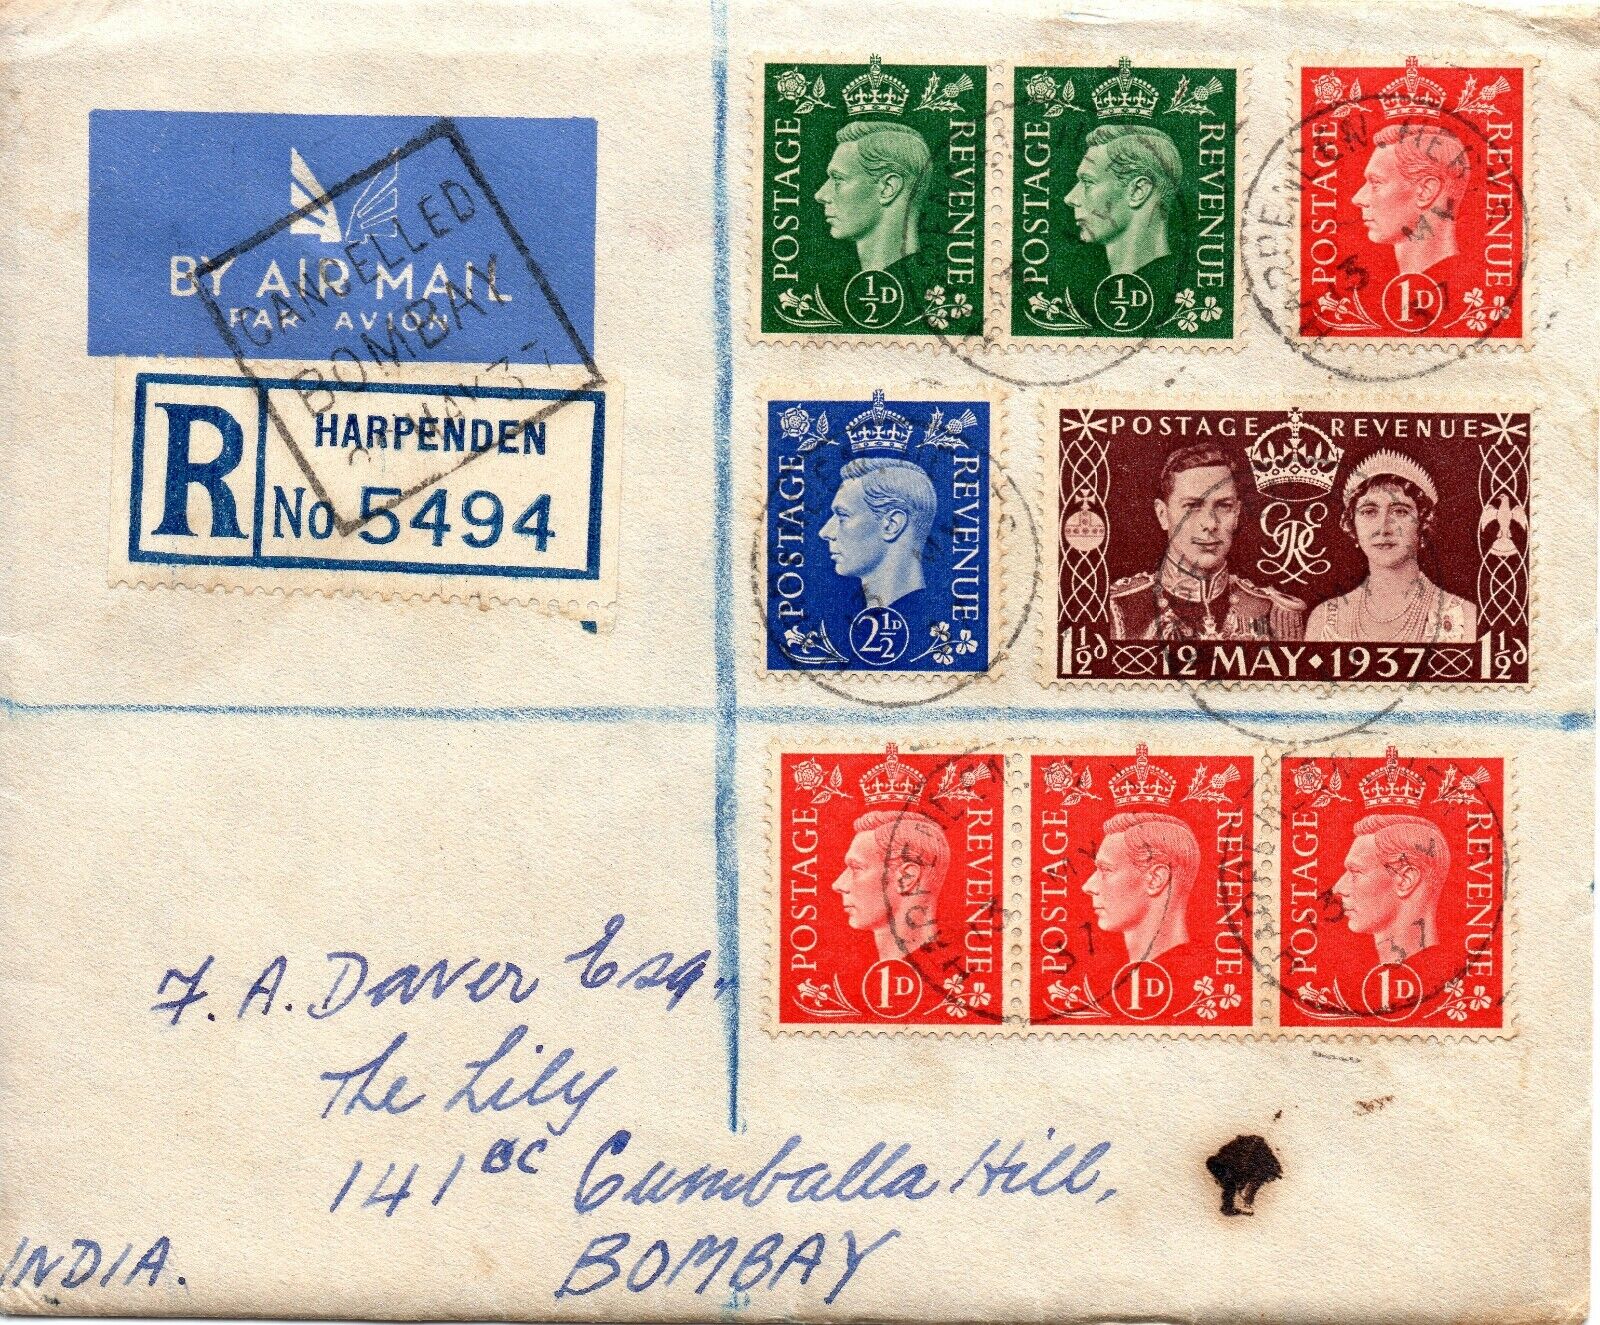 1937 Sg 461 1½ D Rot-Braun Ersttagsbrief Auf Registrierte Post To Bombay, India Super actieprijs, goedkoop